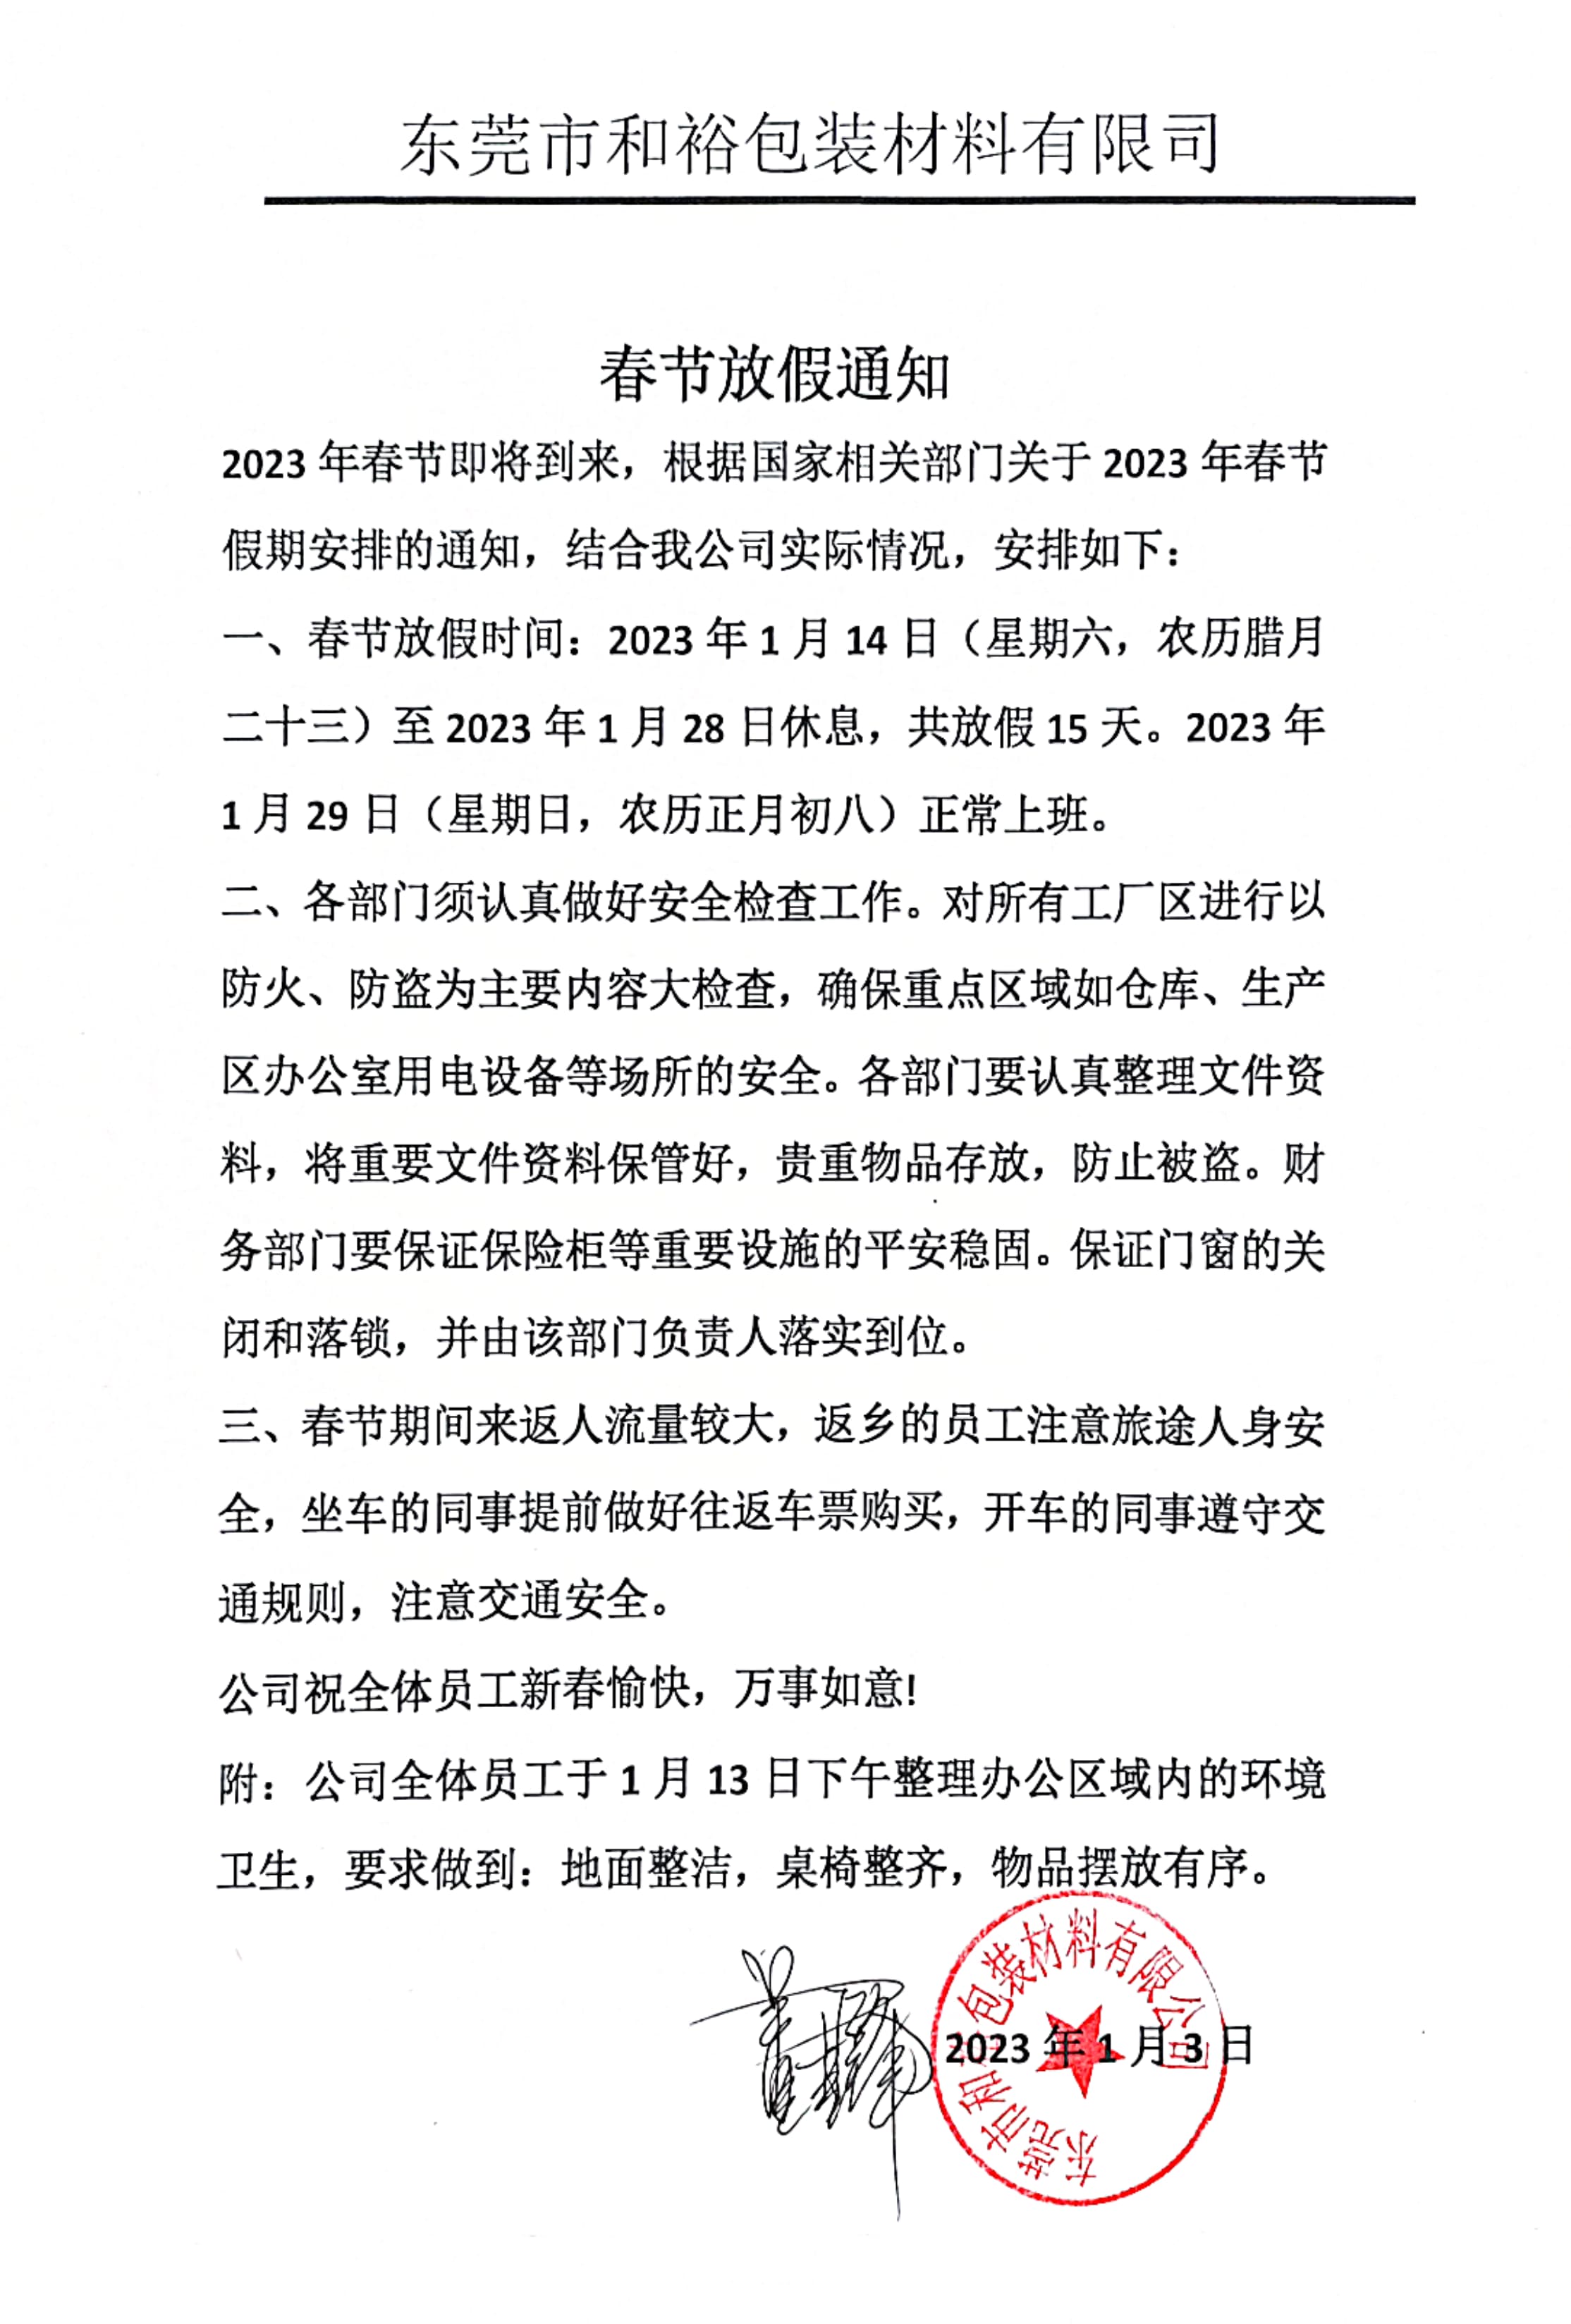 湖南2023年和裕包装春节放假通知